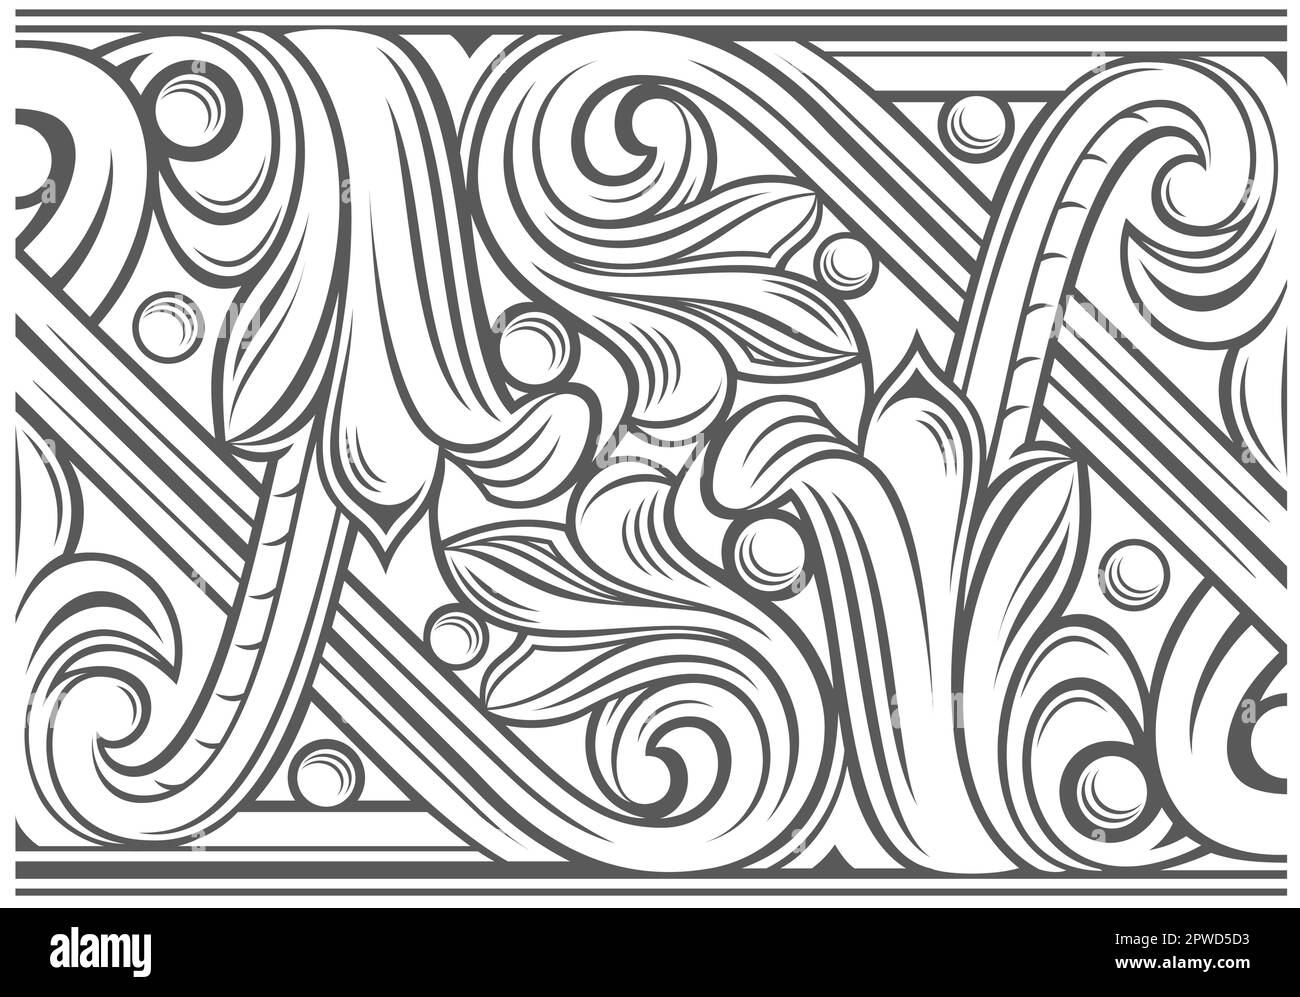 Vektorgrafiken. Textur der klassischen klassischen klassischen Zierstreifen-Gravurschablone. Blaslet-Tattoo-Vorlage, Bänder, Vignetten Stock Vektor